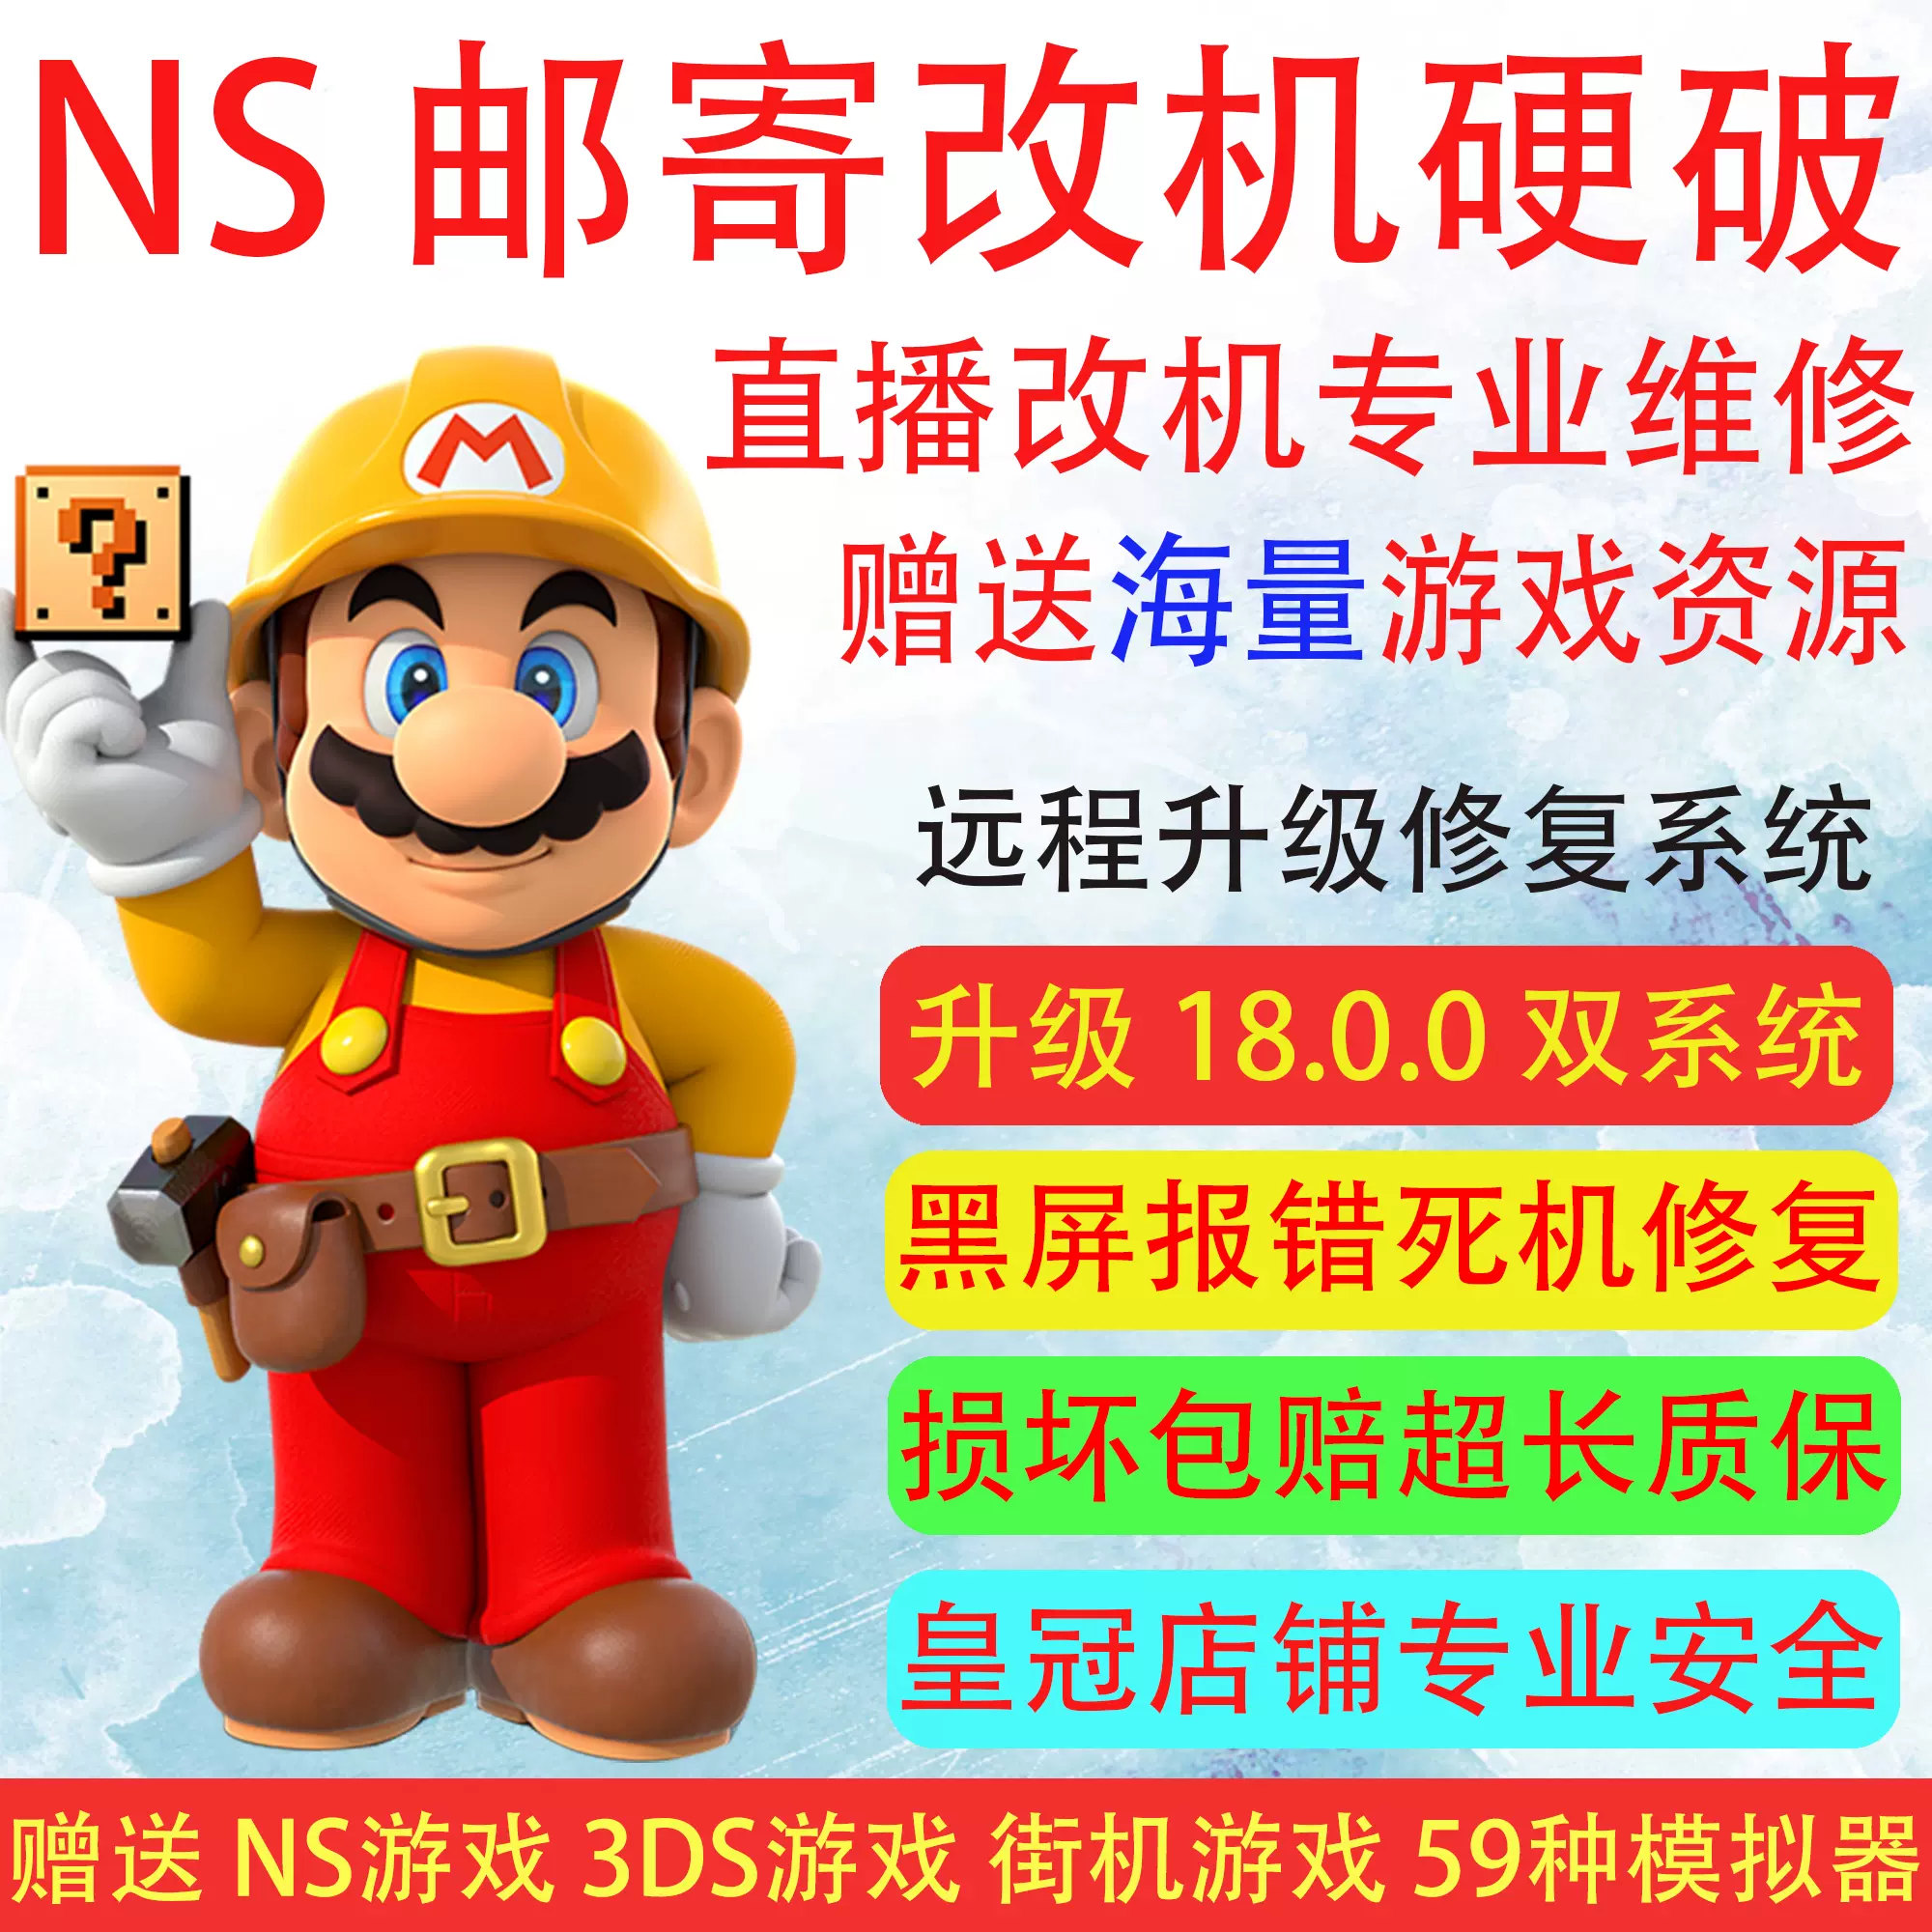 NEW 3DS 2DS LL XL遠程破解BAN刷機B9S系統升級11.17變磚黑屏漢化-Taobao